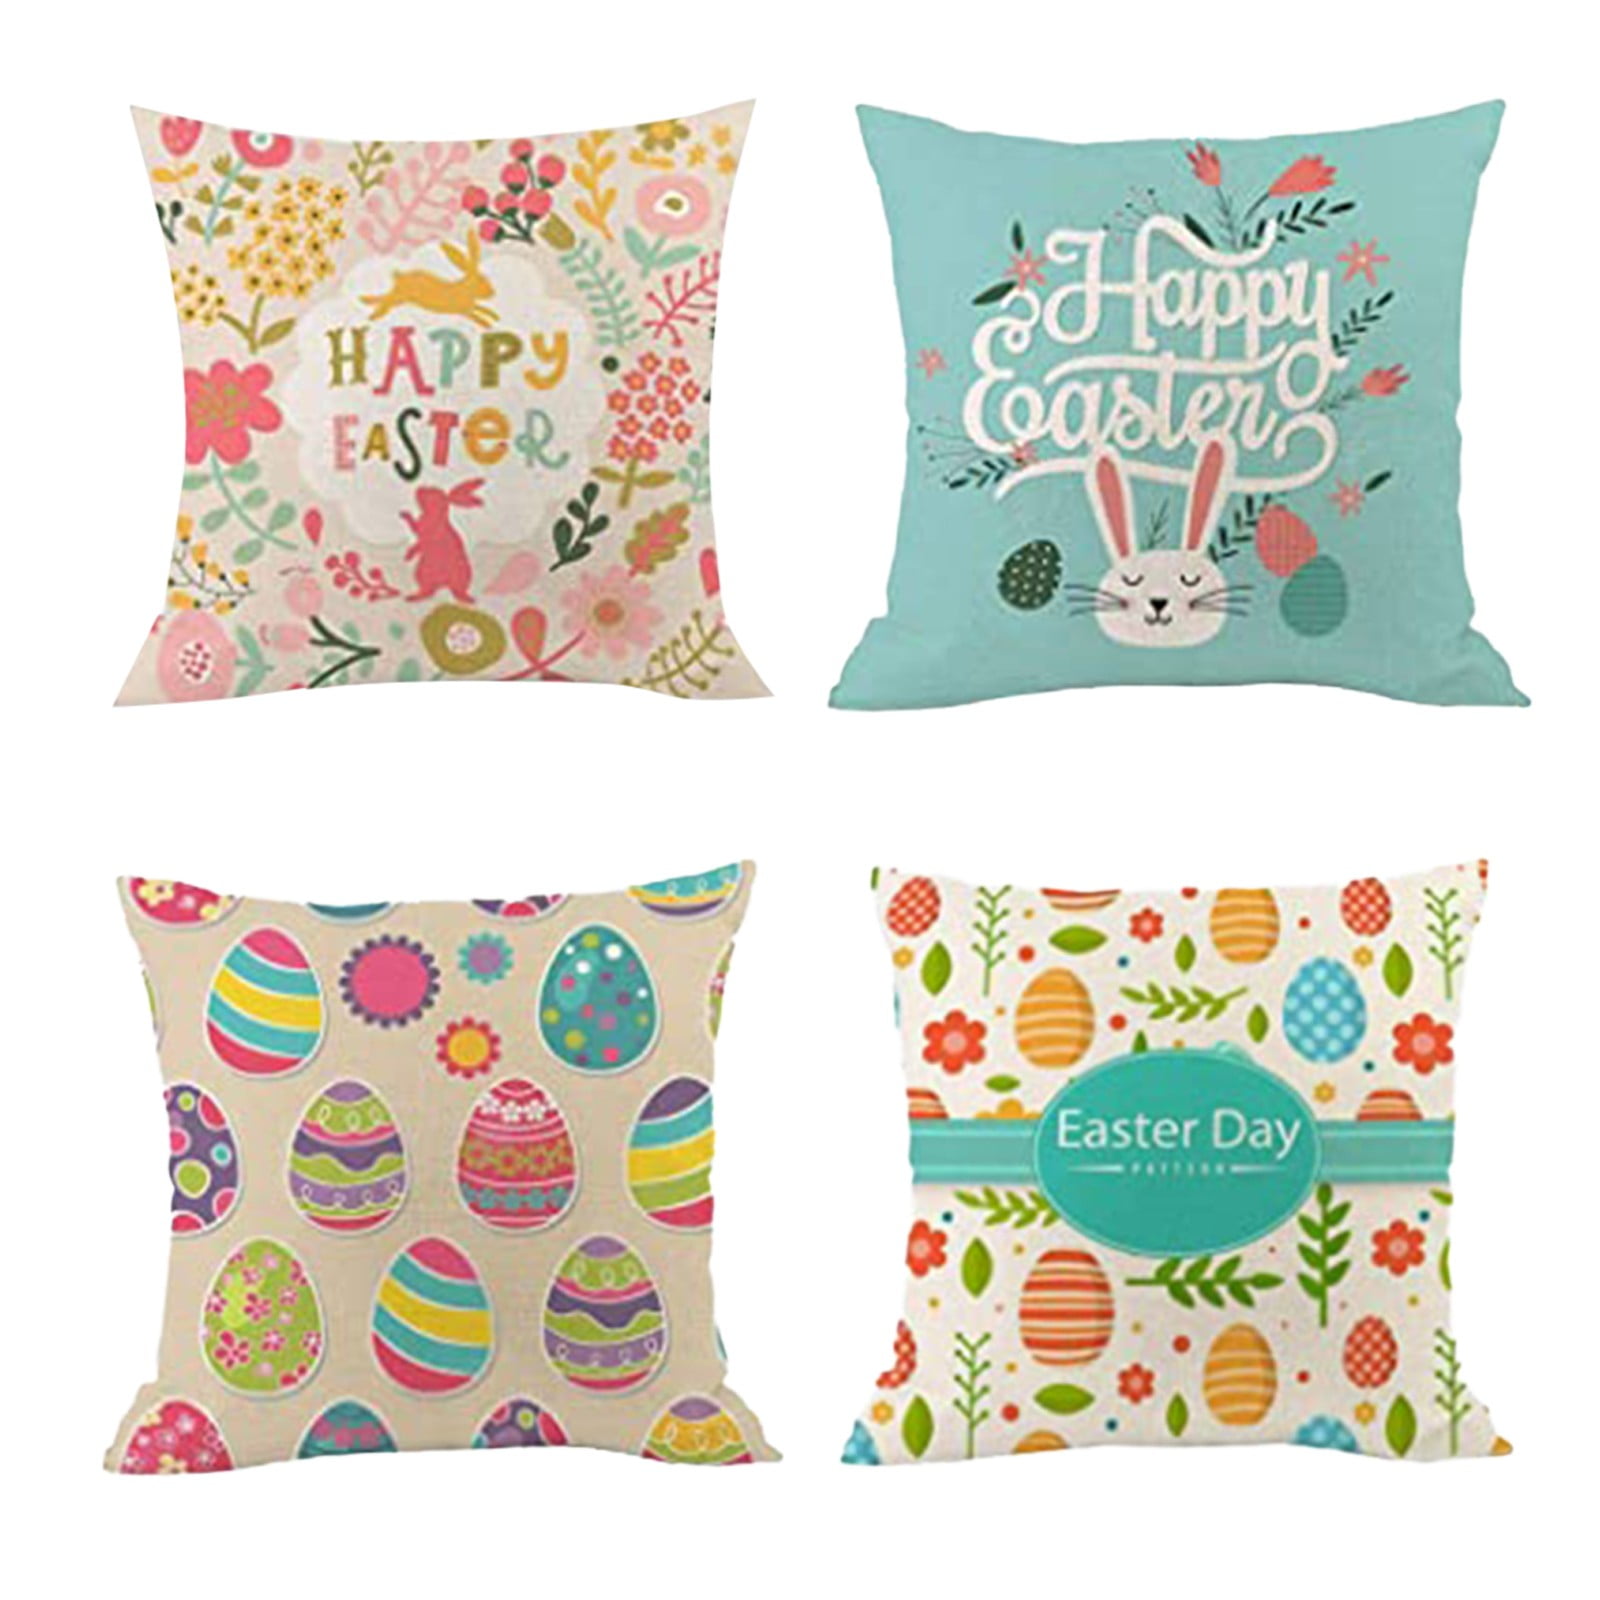 New Printed Multicolor Decor Throw Sofa Pillow Case Cushion Cover Home Decor